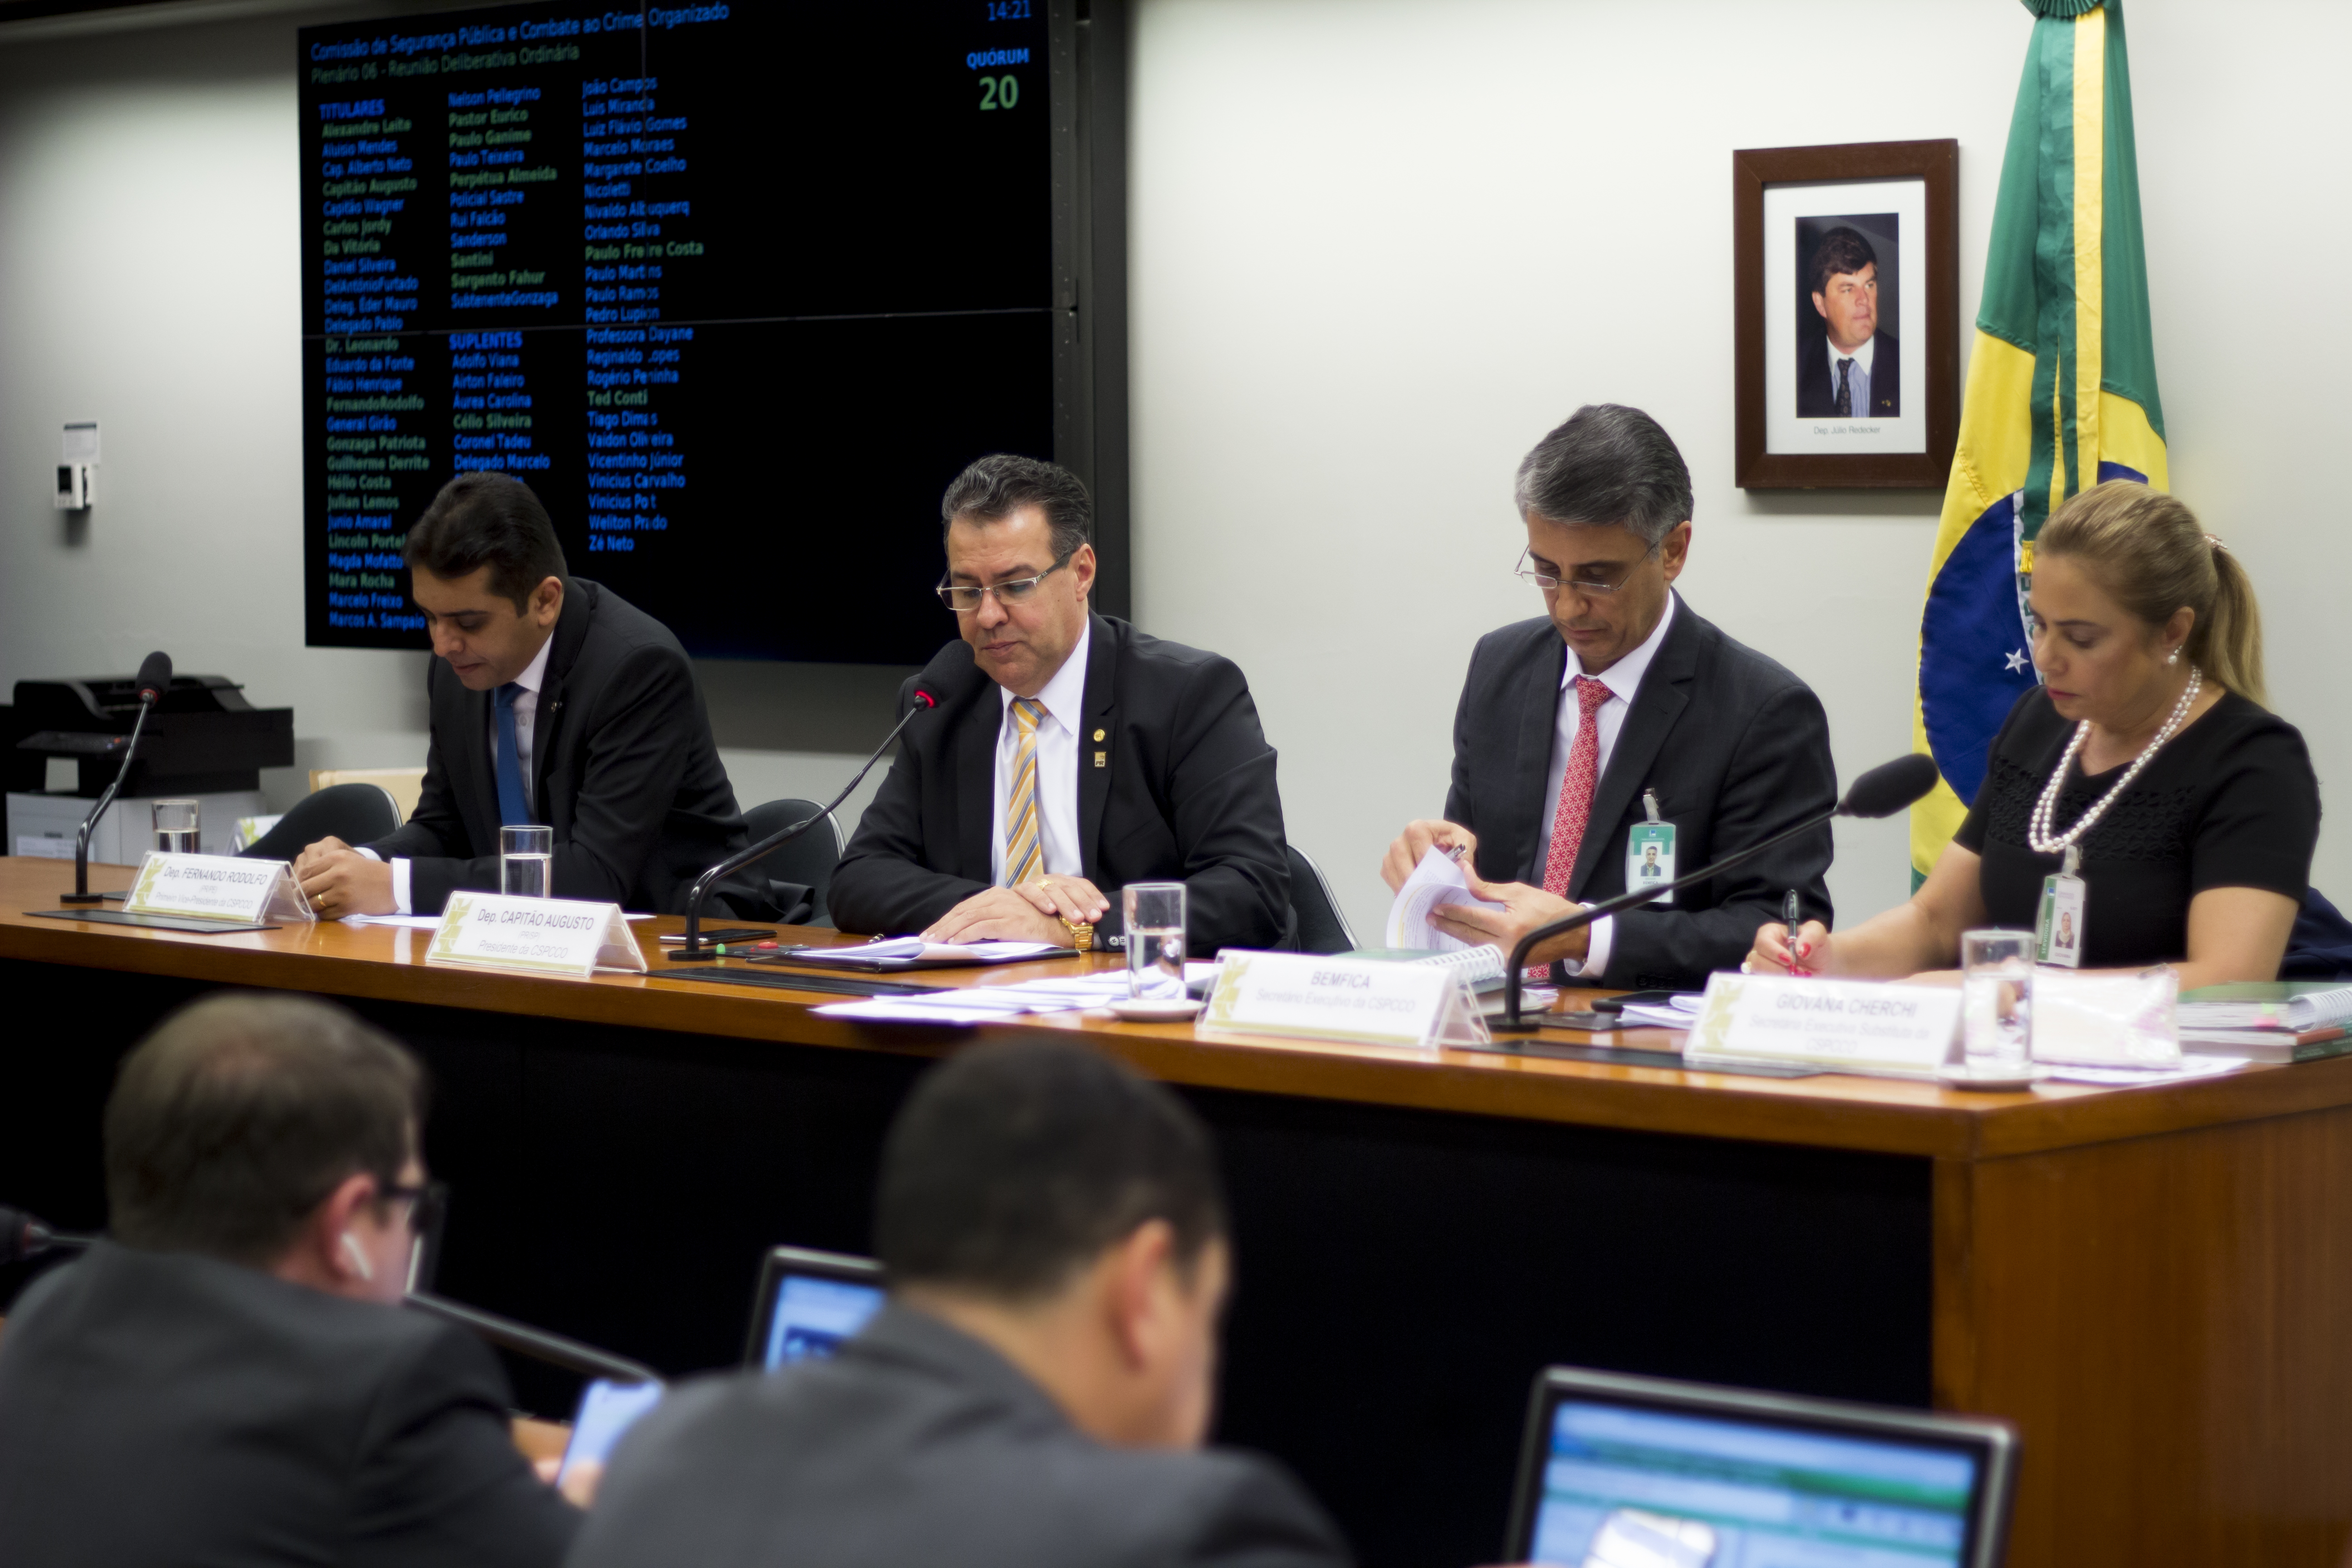 Colegiado da Comissão aprova Requerimento para visita técnica à Colômbia com o objetivo de aprender sobre o modelo de combate ao crime do país